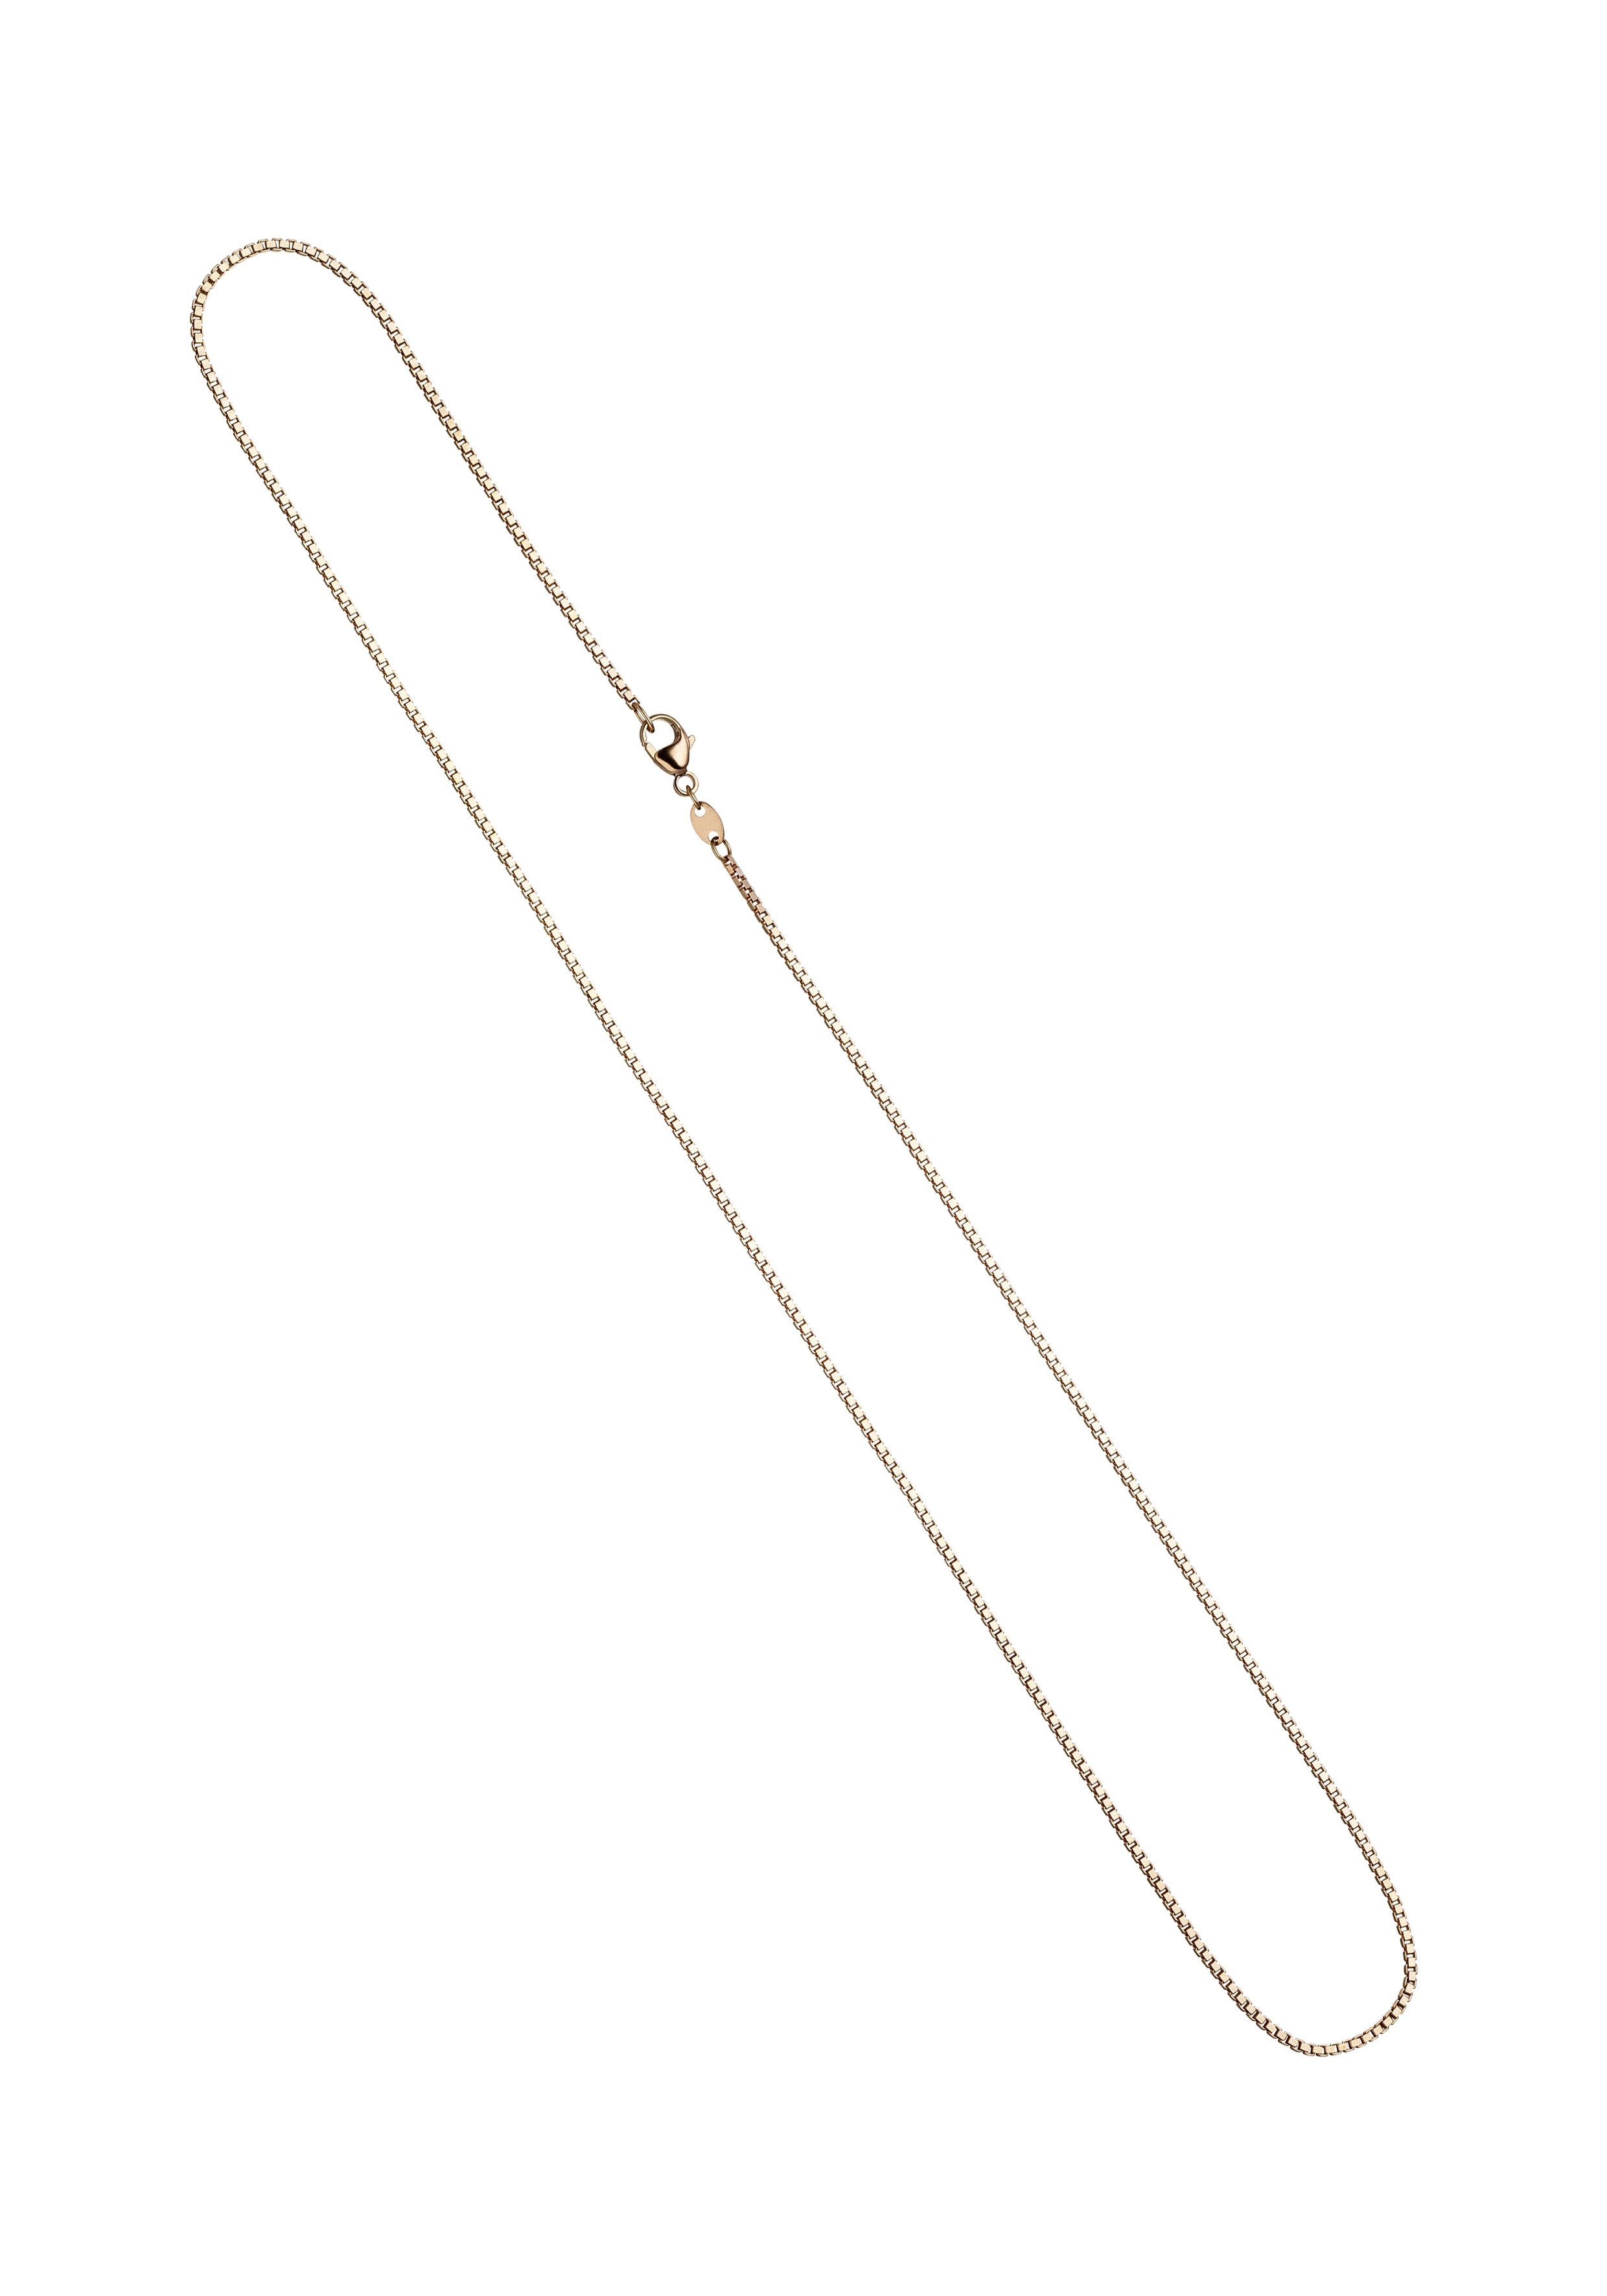 JOBO Goldkette Venezianerkette, 585 Roségold 1,2 mm 50 cm